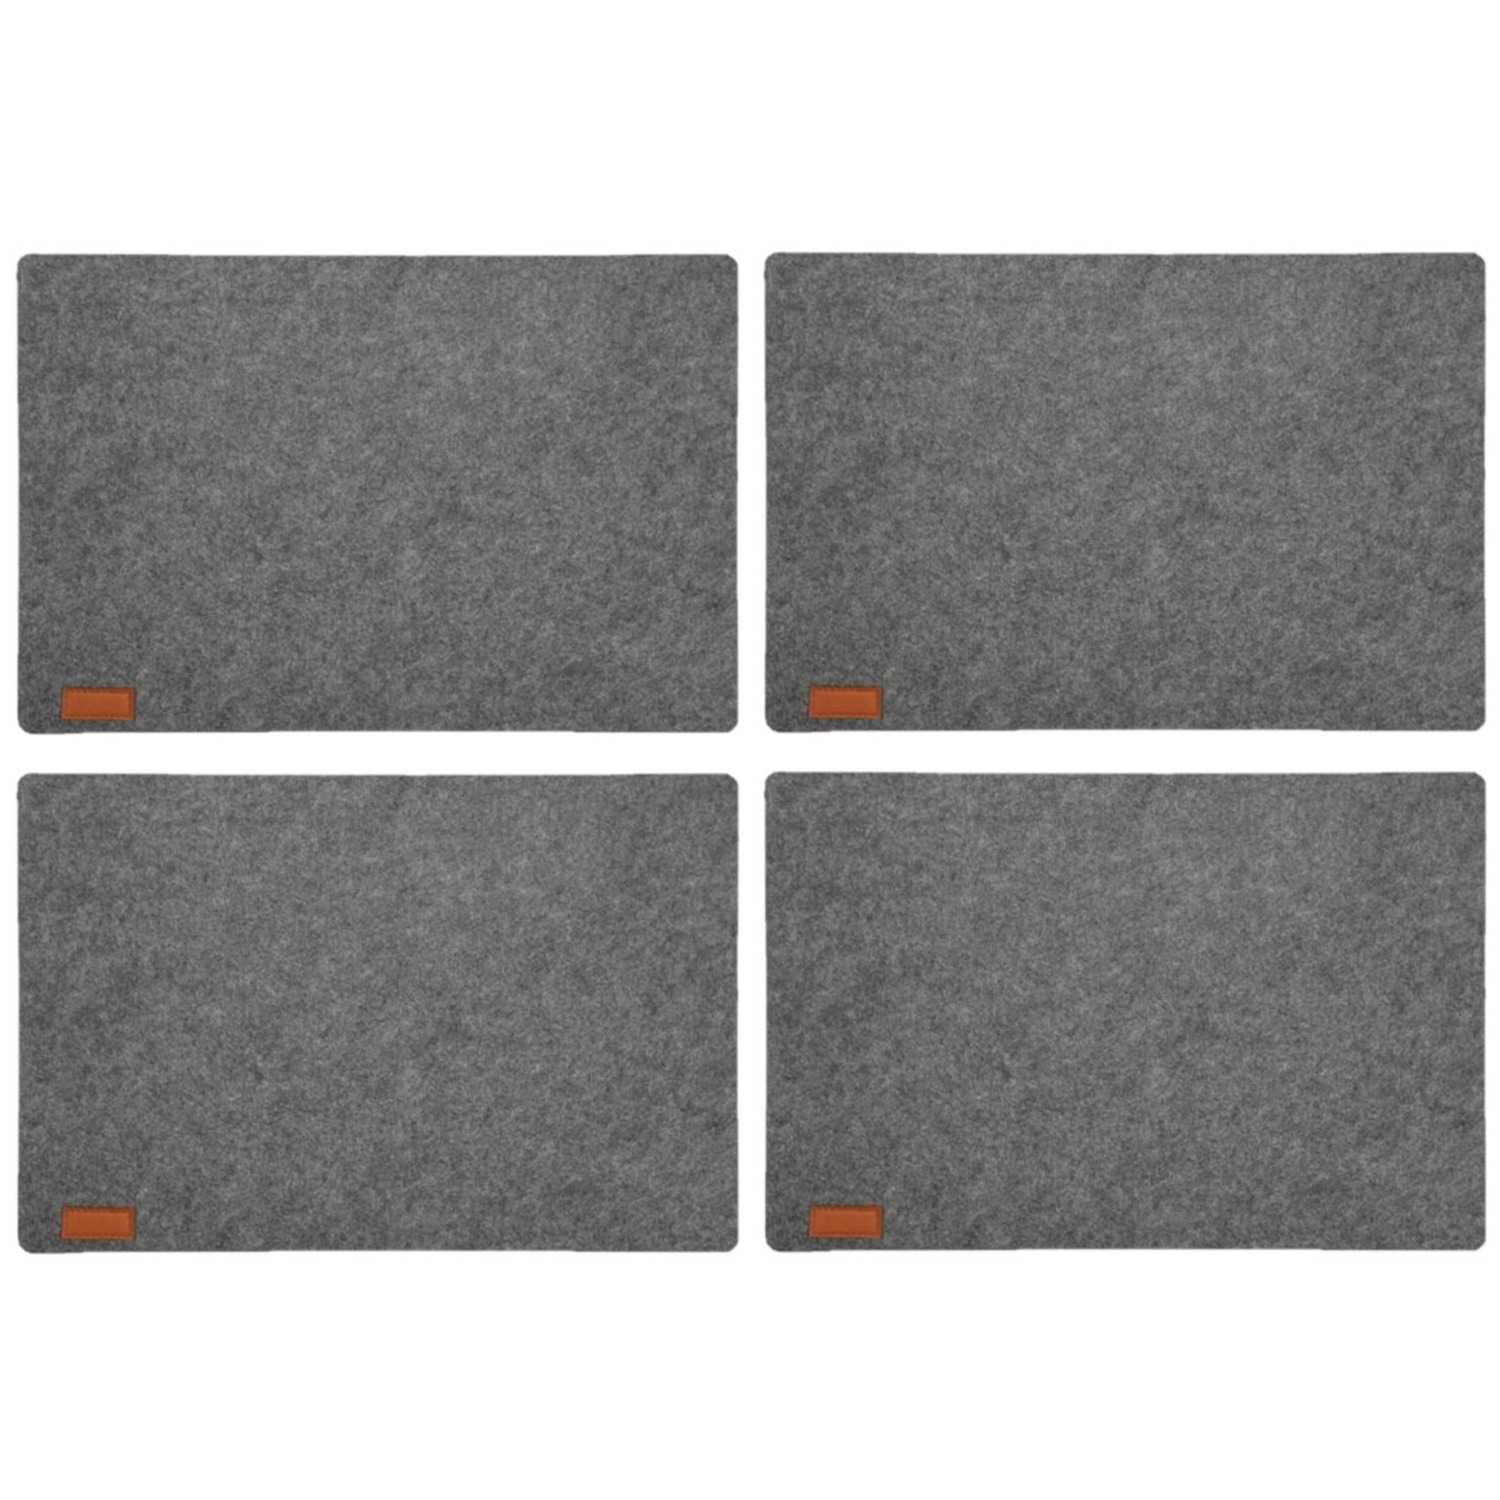 Cepewa 12x stuks rechthoekige placemats met ronde hoeken polyester grijs 30 x 45 cm -